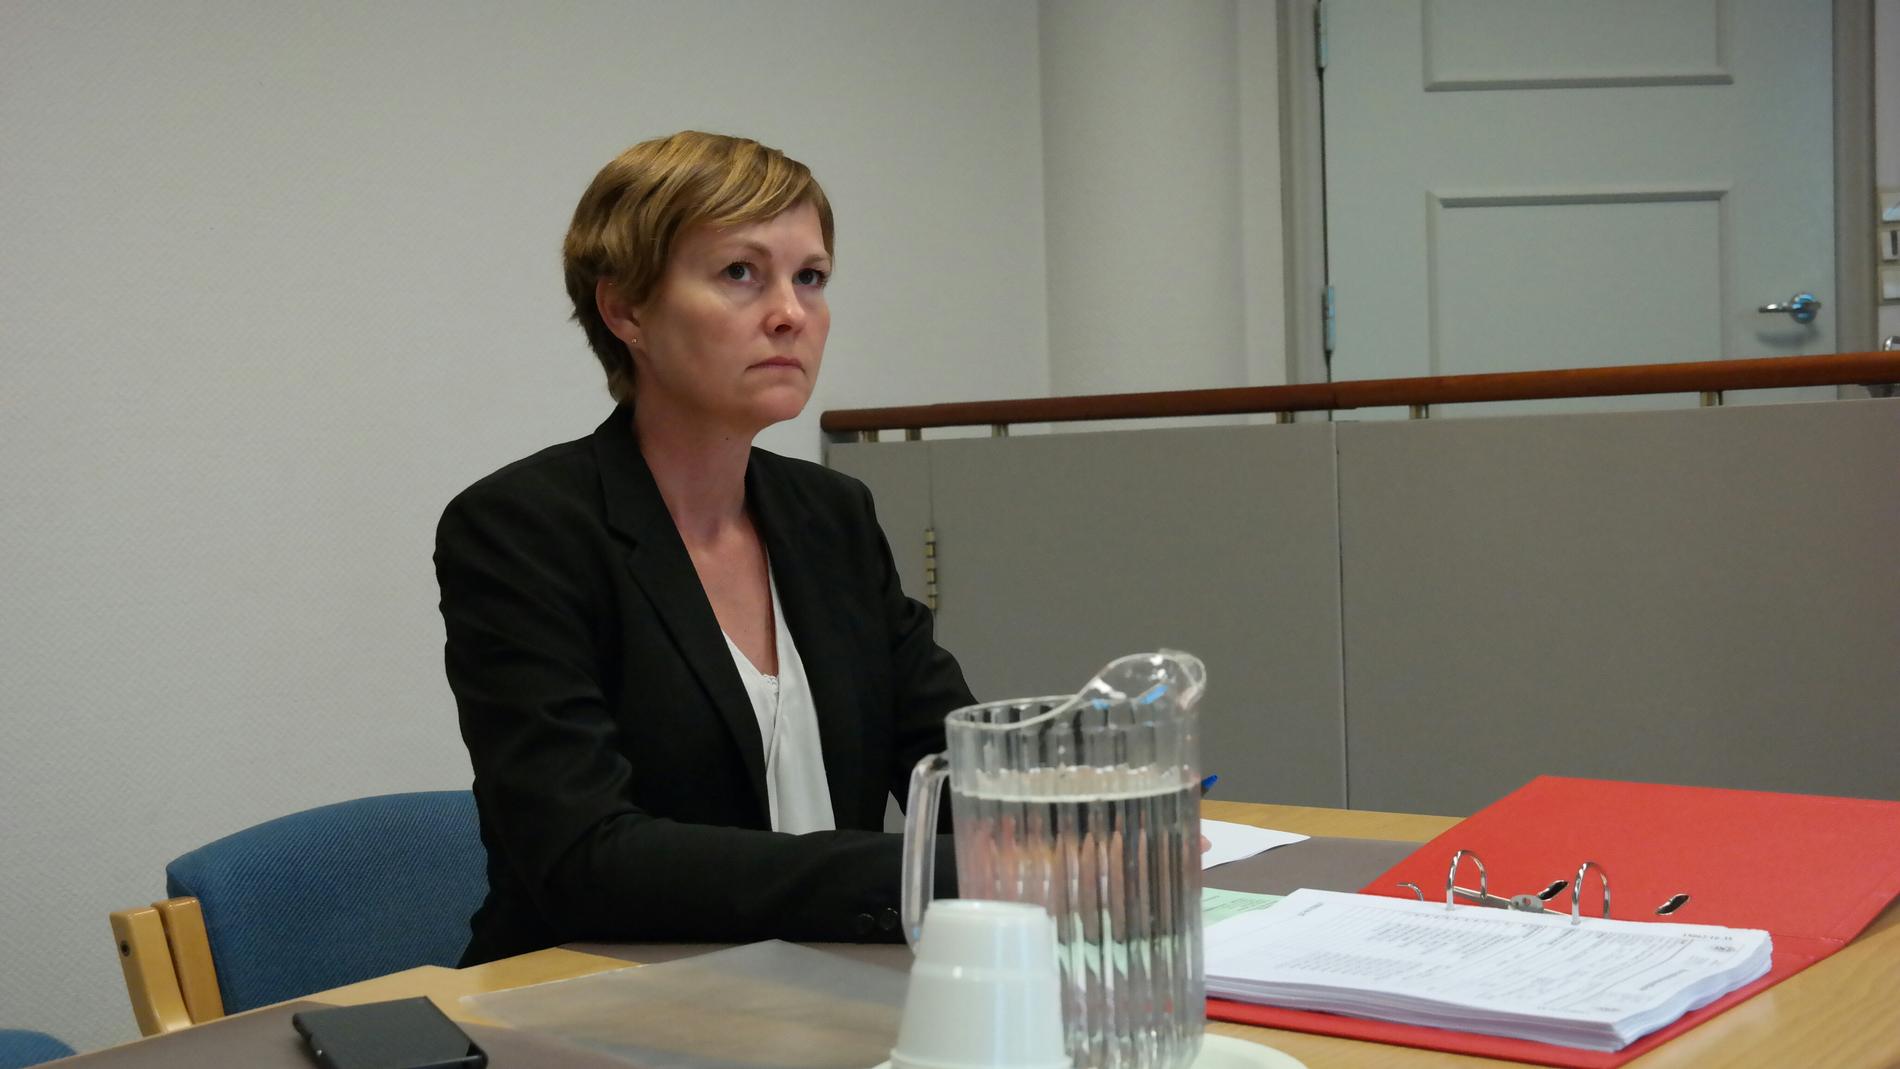 Politiadvokat Inger-Lise Høyland krevde seks uker i varetekt for den 25 år gamle mannen. Han er tidligere dømt for overgrep mot barn og besittelse av fremstillinger som seksualiserer barn. Høyland fikk retten med på fengsling, men bare for fire uker.